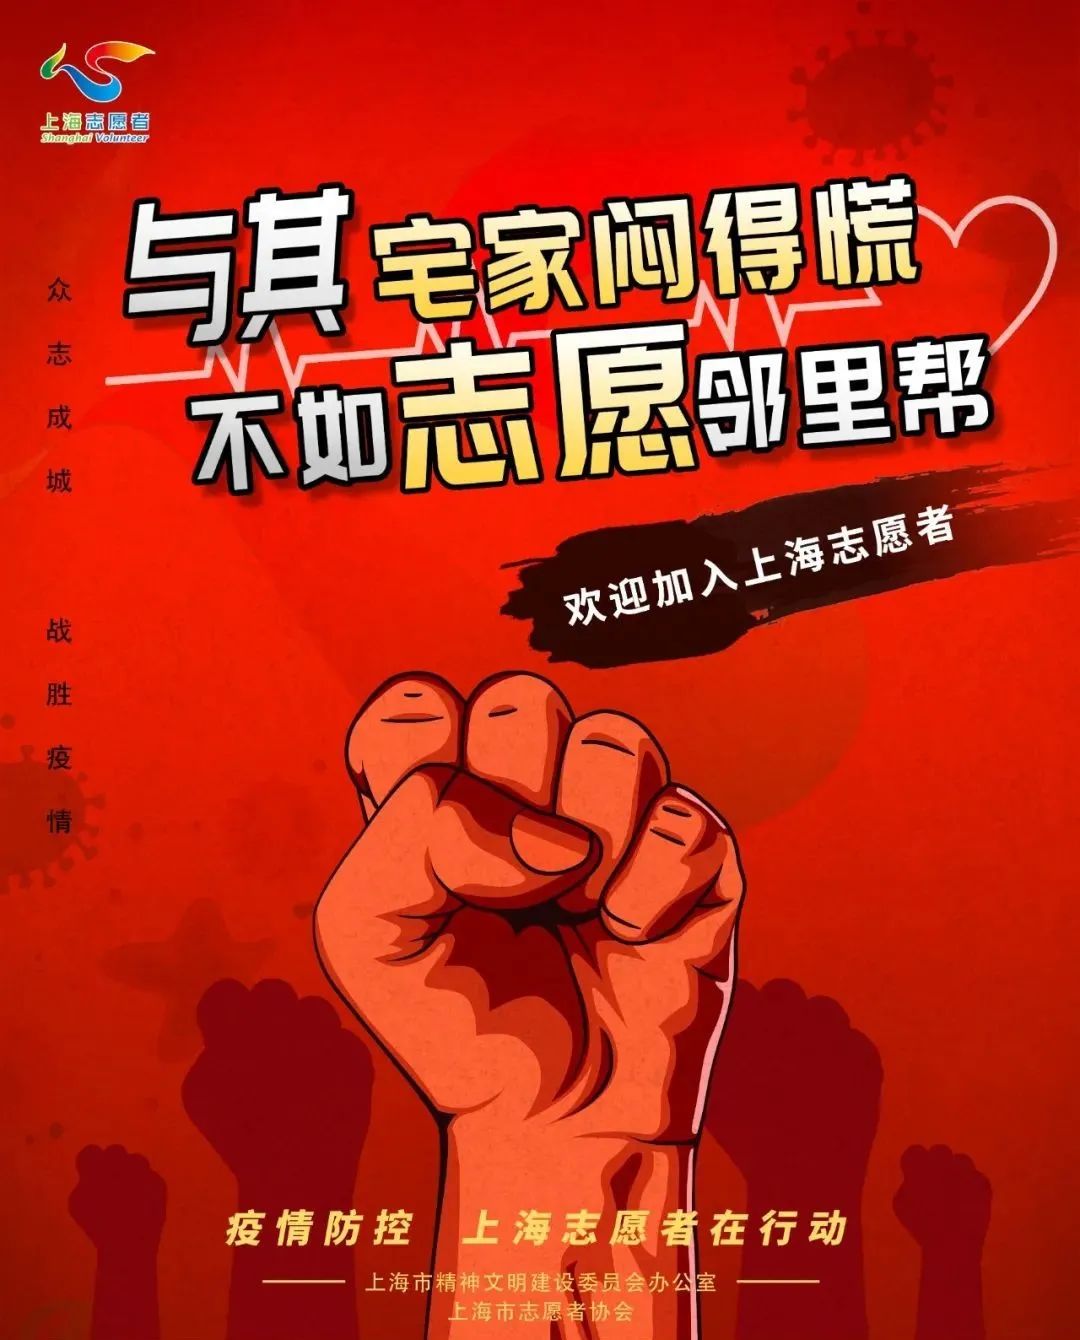 招募共筑抗疫防火墙欢迎加入上海志愿者